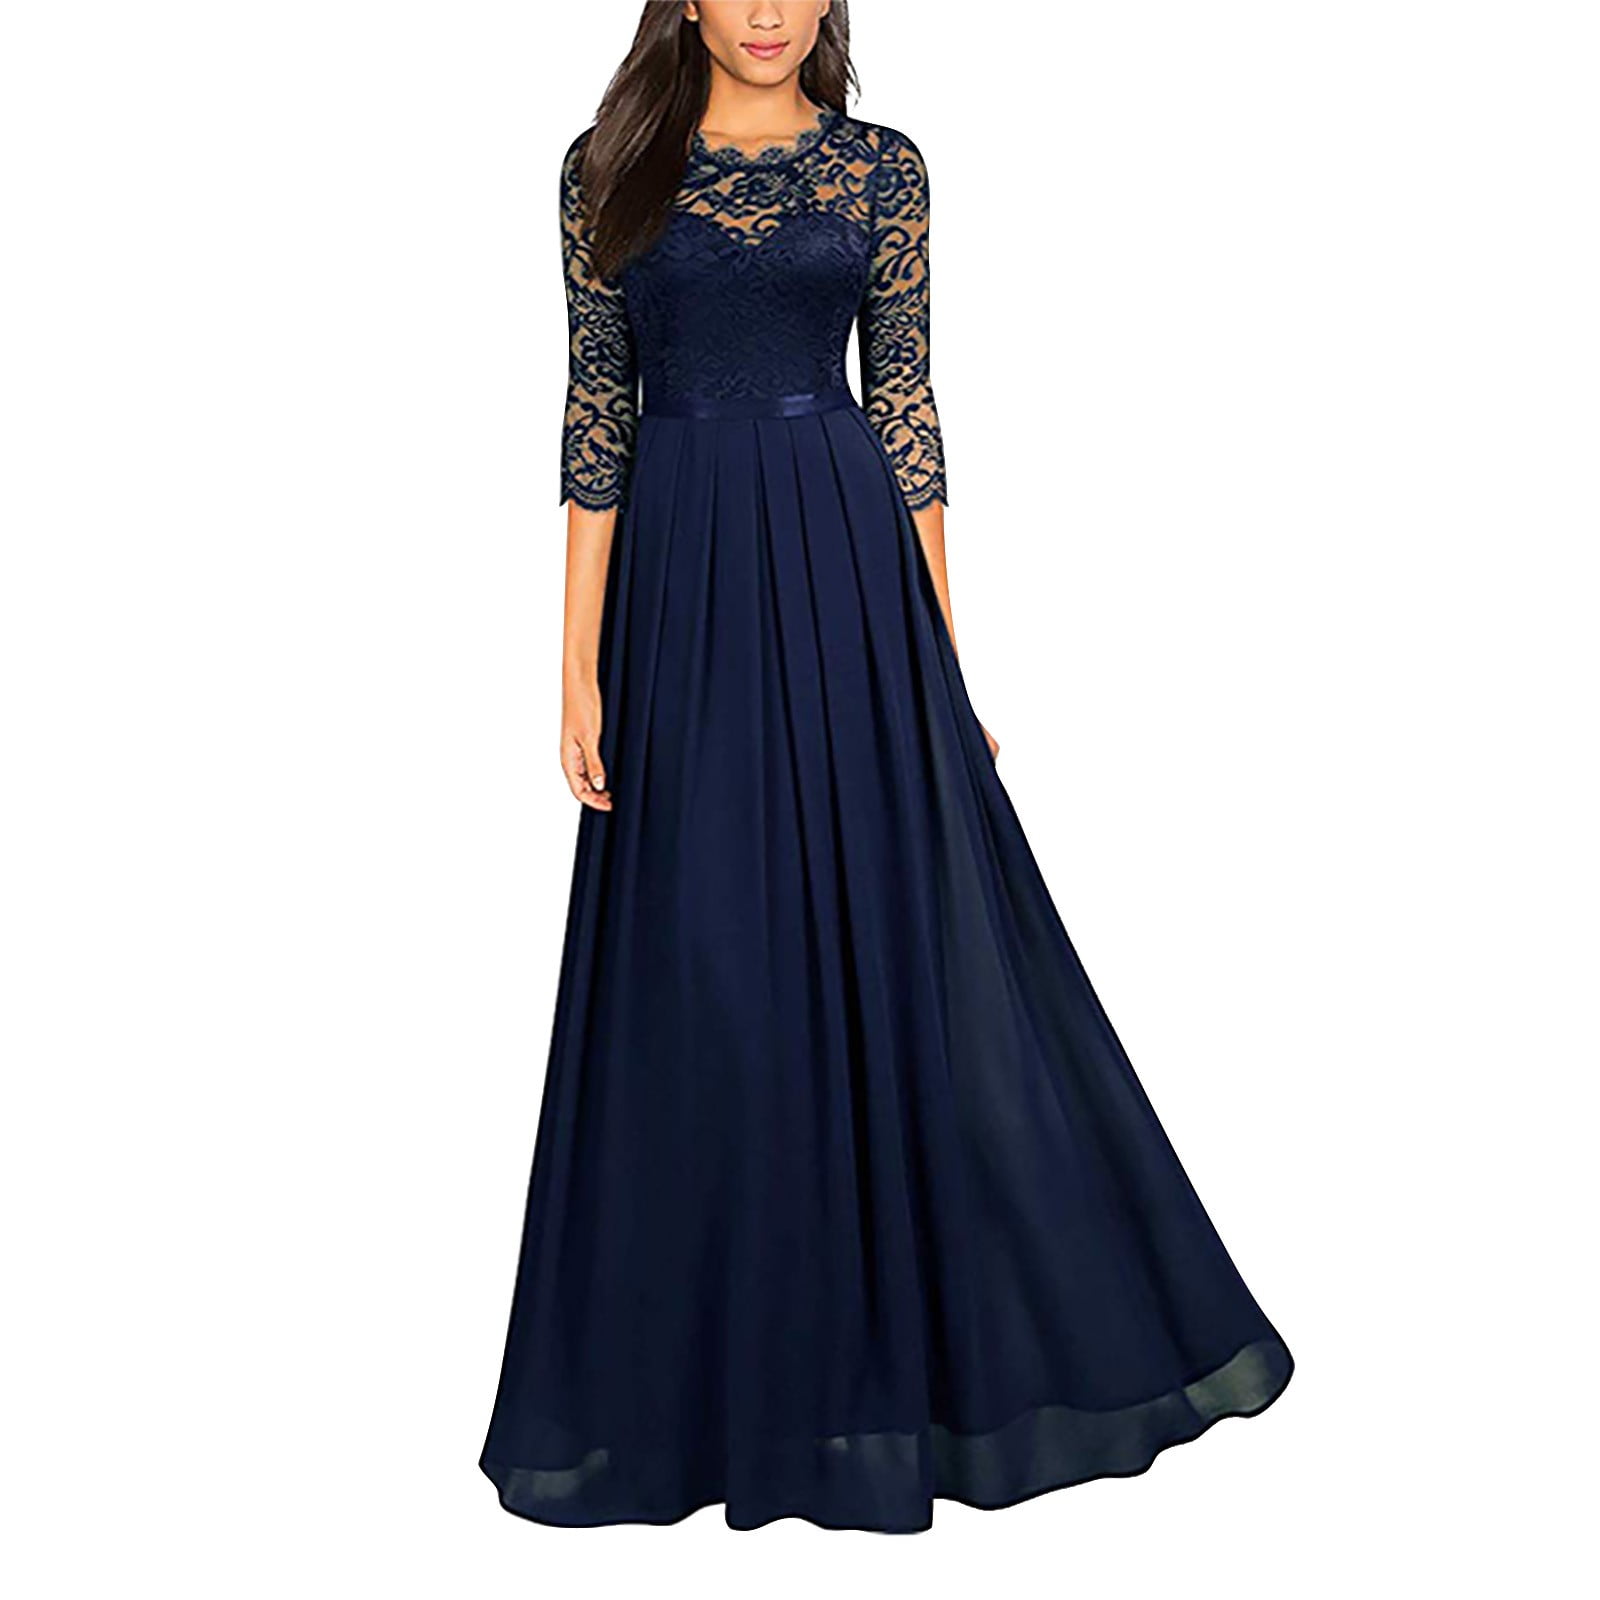 60 vestidos azul serenity para madrinhas de casamento  Wedding attire  guest, Pretty prom dresses, Prom dresses blue